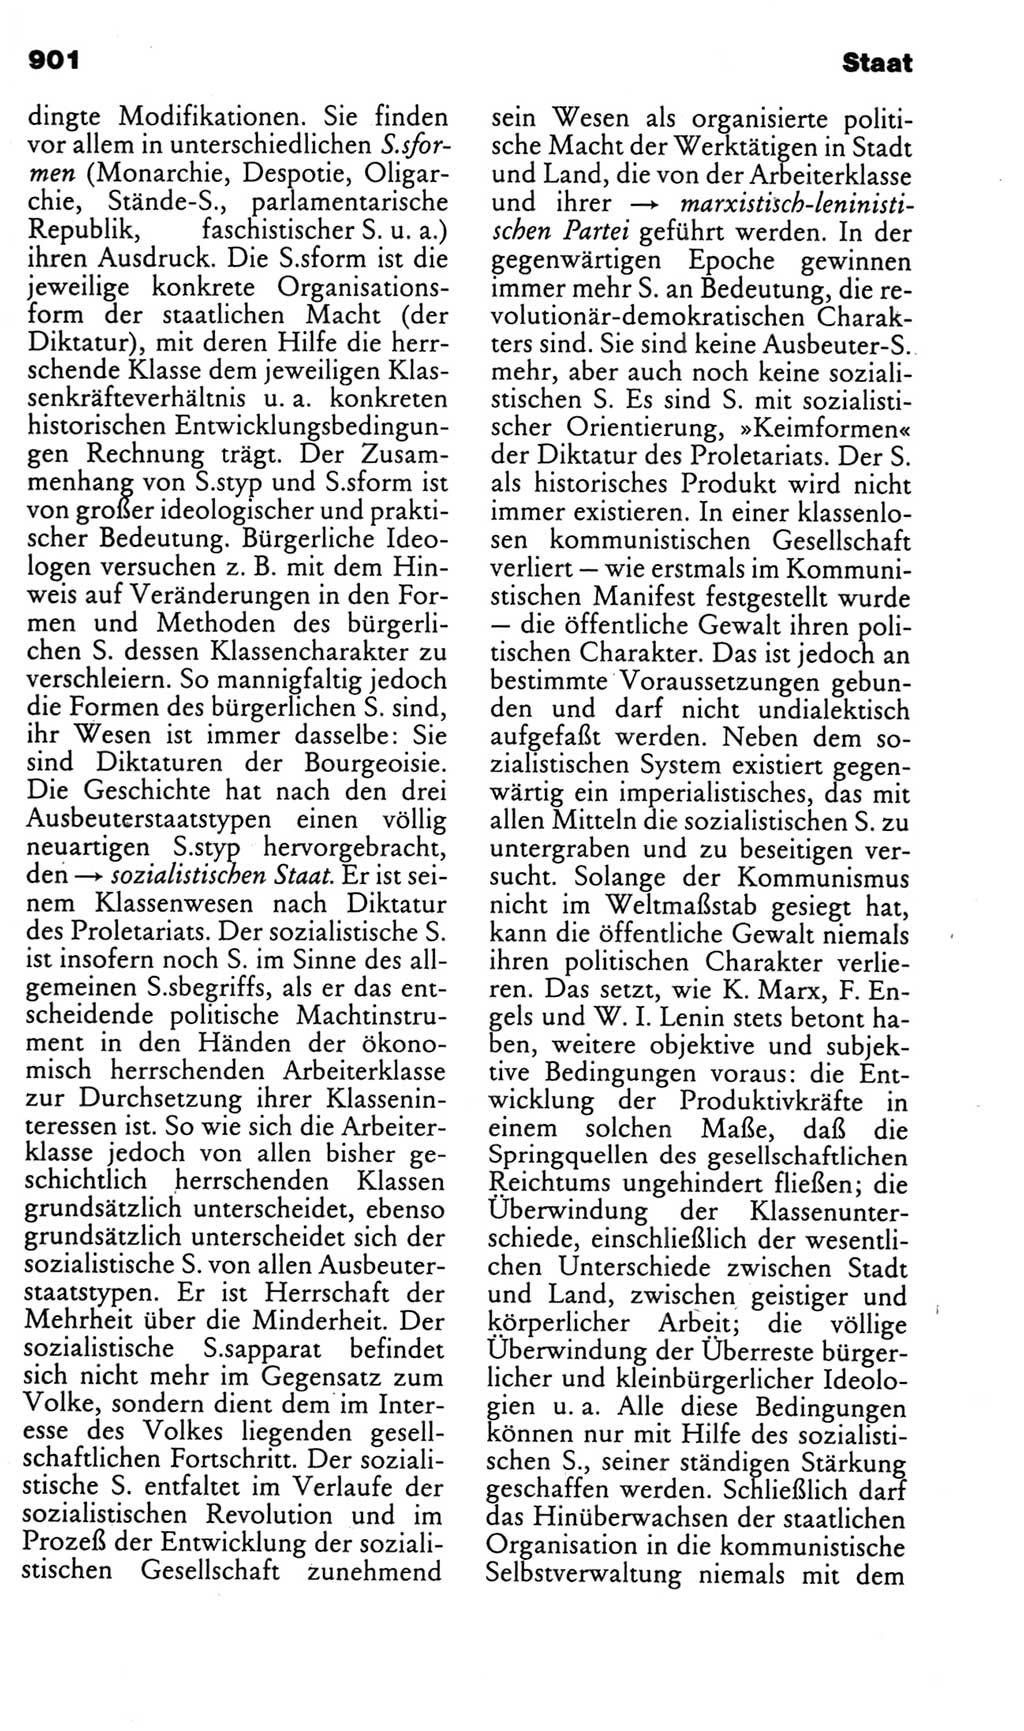 Kleines politisches Wörterbuch [Deutsche Demokratische Republik (DDR)] 1985, Seite 901 (Kl. pol. Wb. DDR 1985, S. 901)